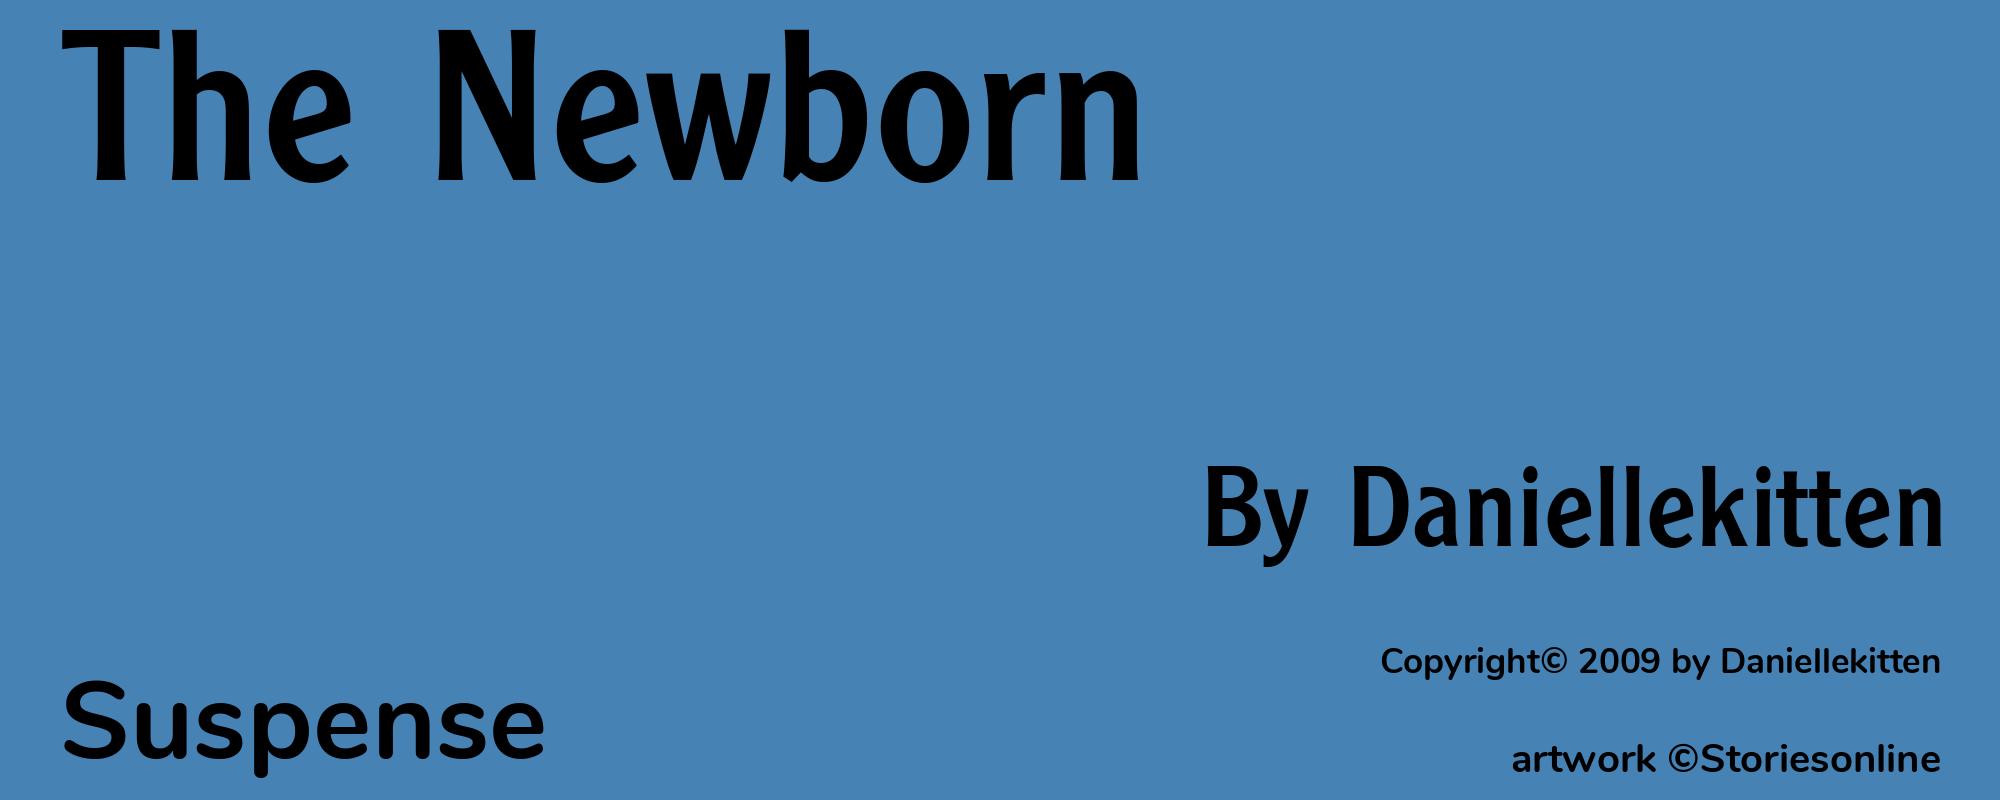 The Newborn - Cover